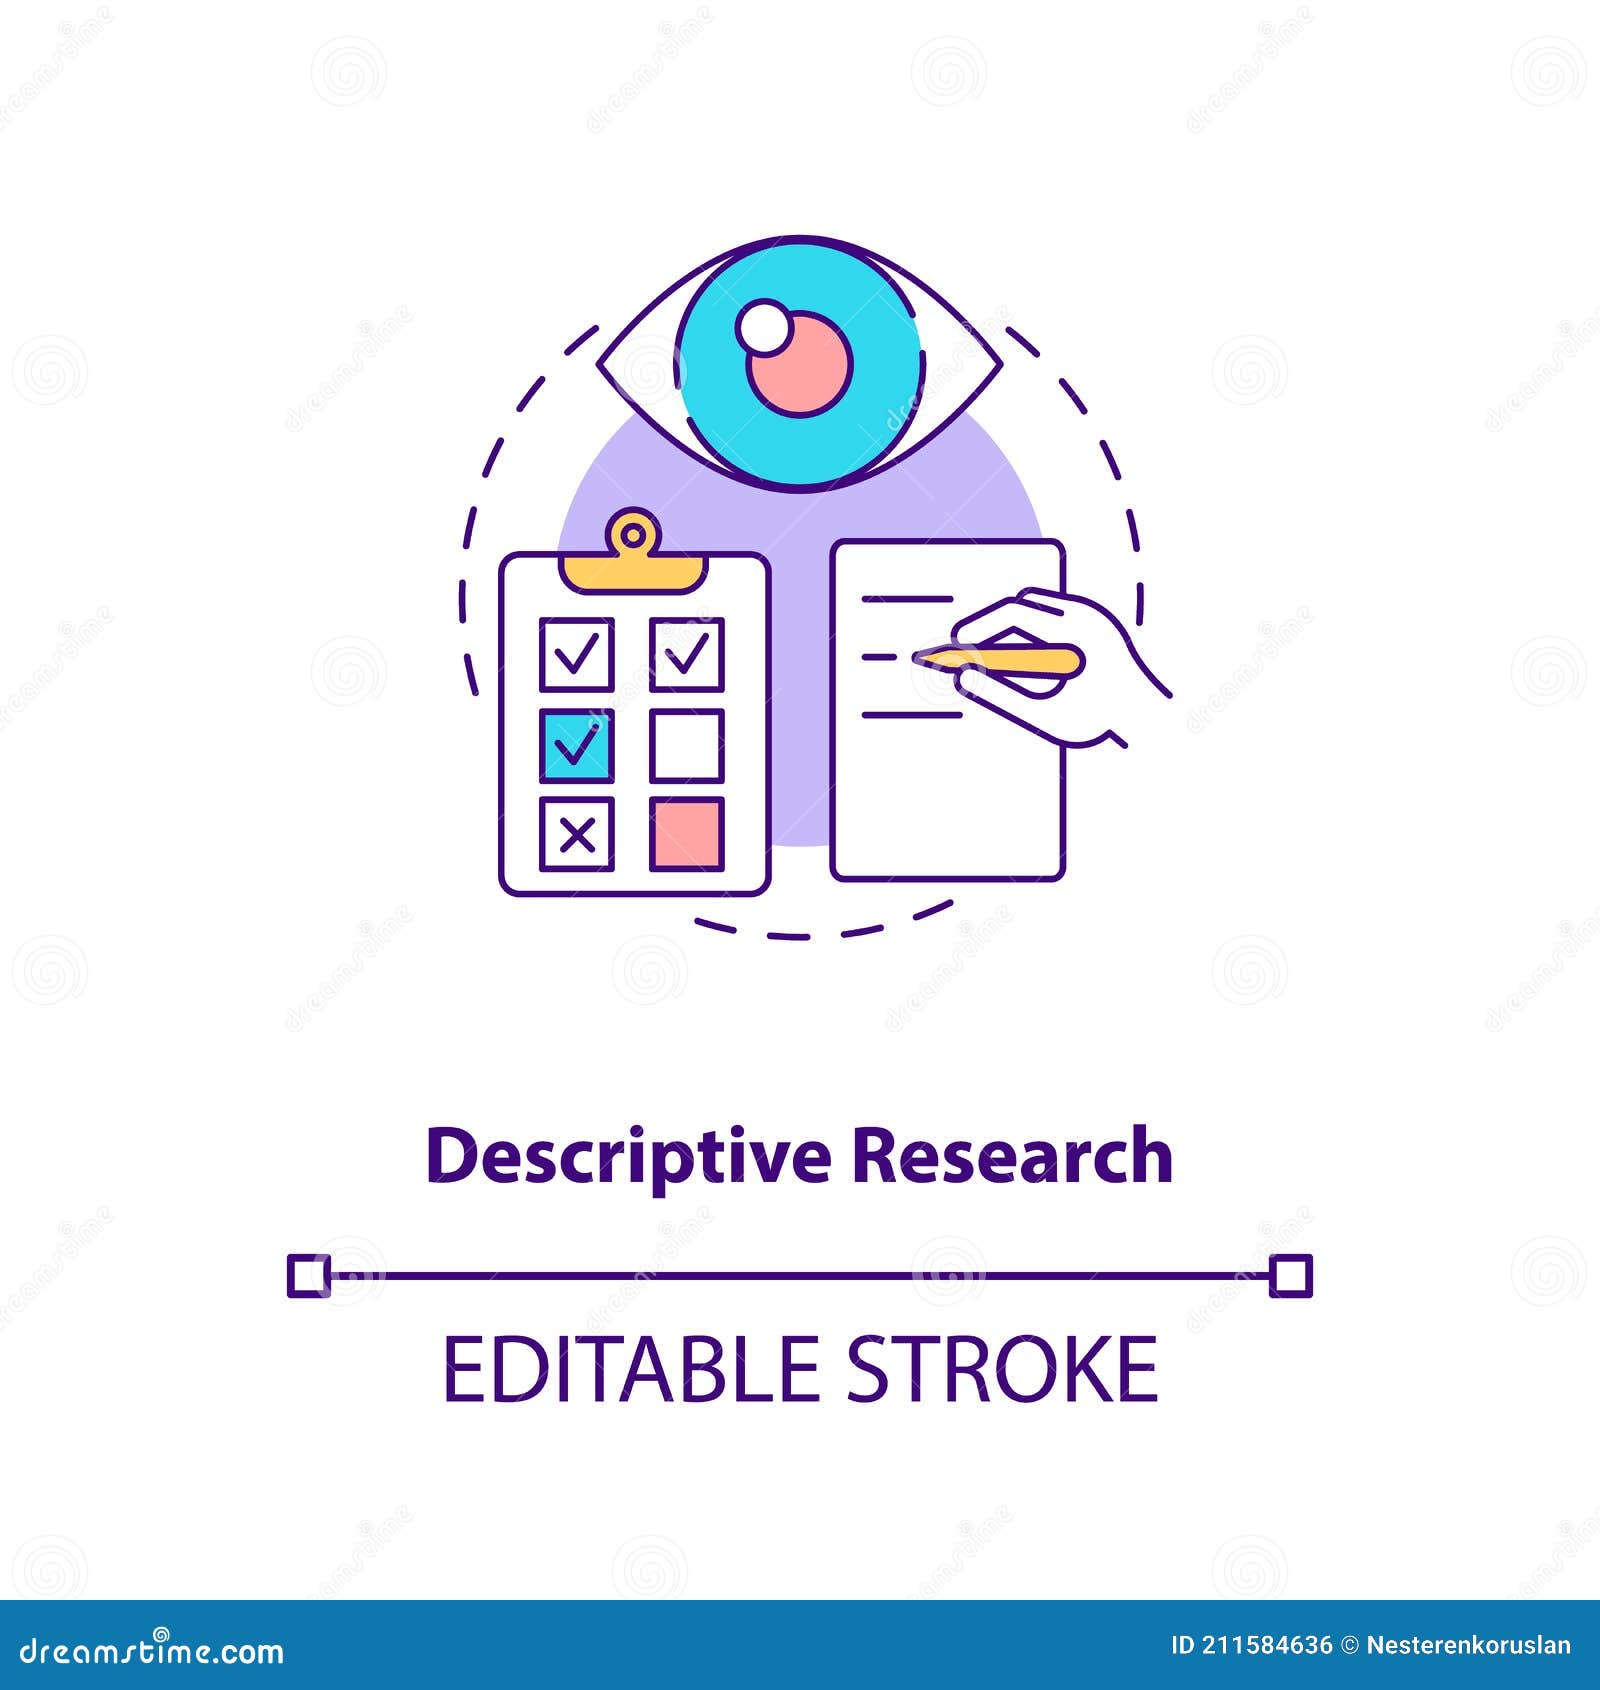 descriptive research concept icon